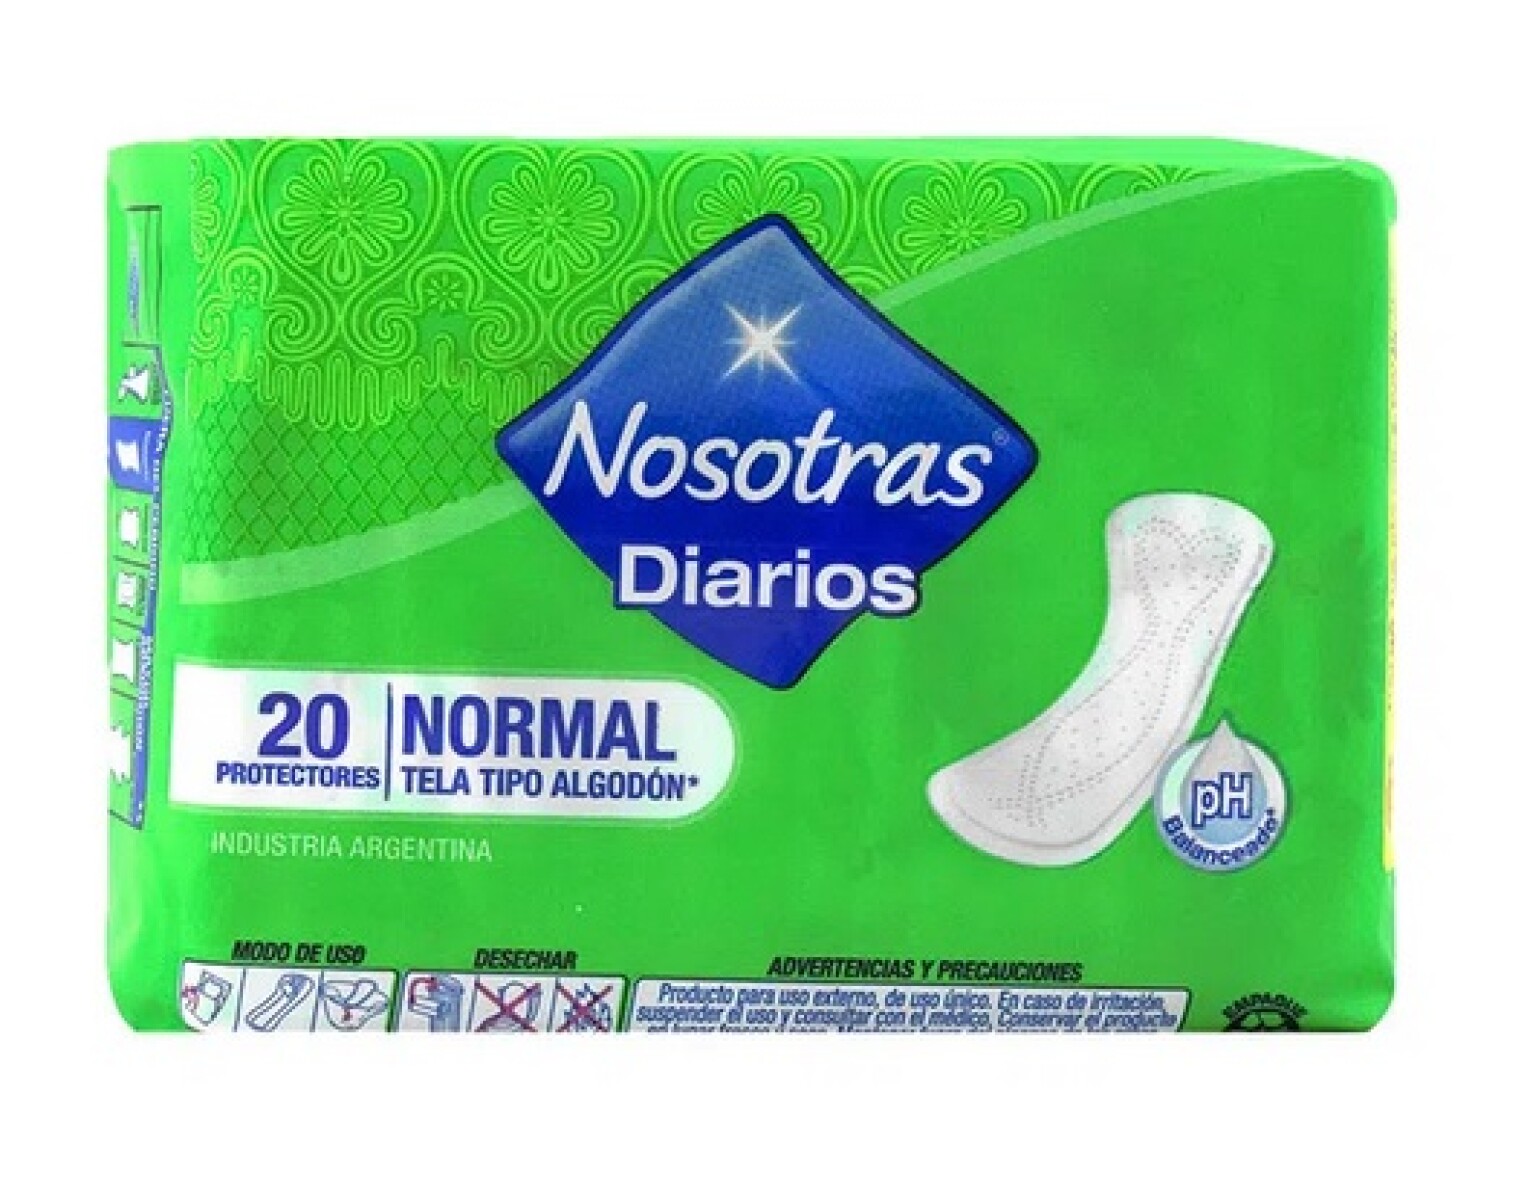 PROTECTORES DIARIOS NOSOTRAS 20 UNIDADES NORMAL 